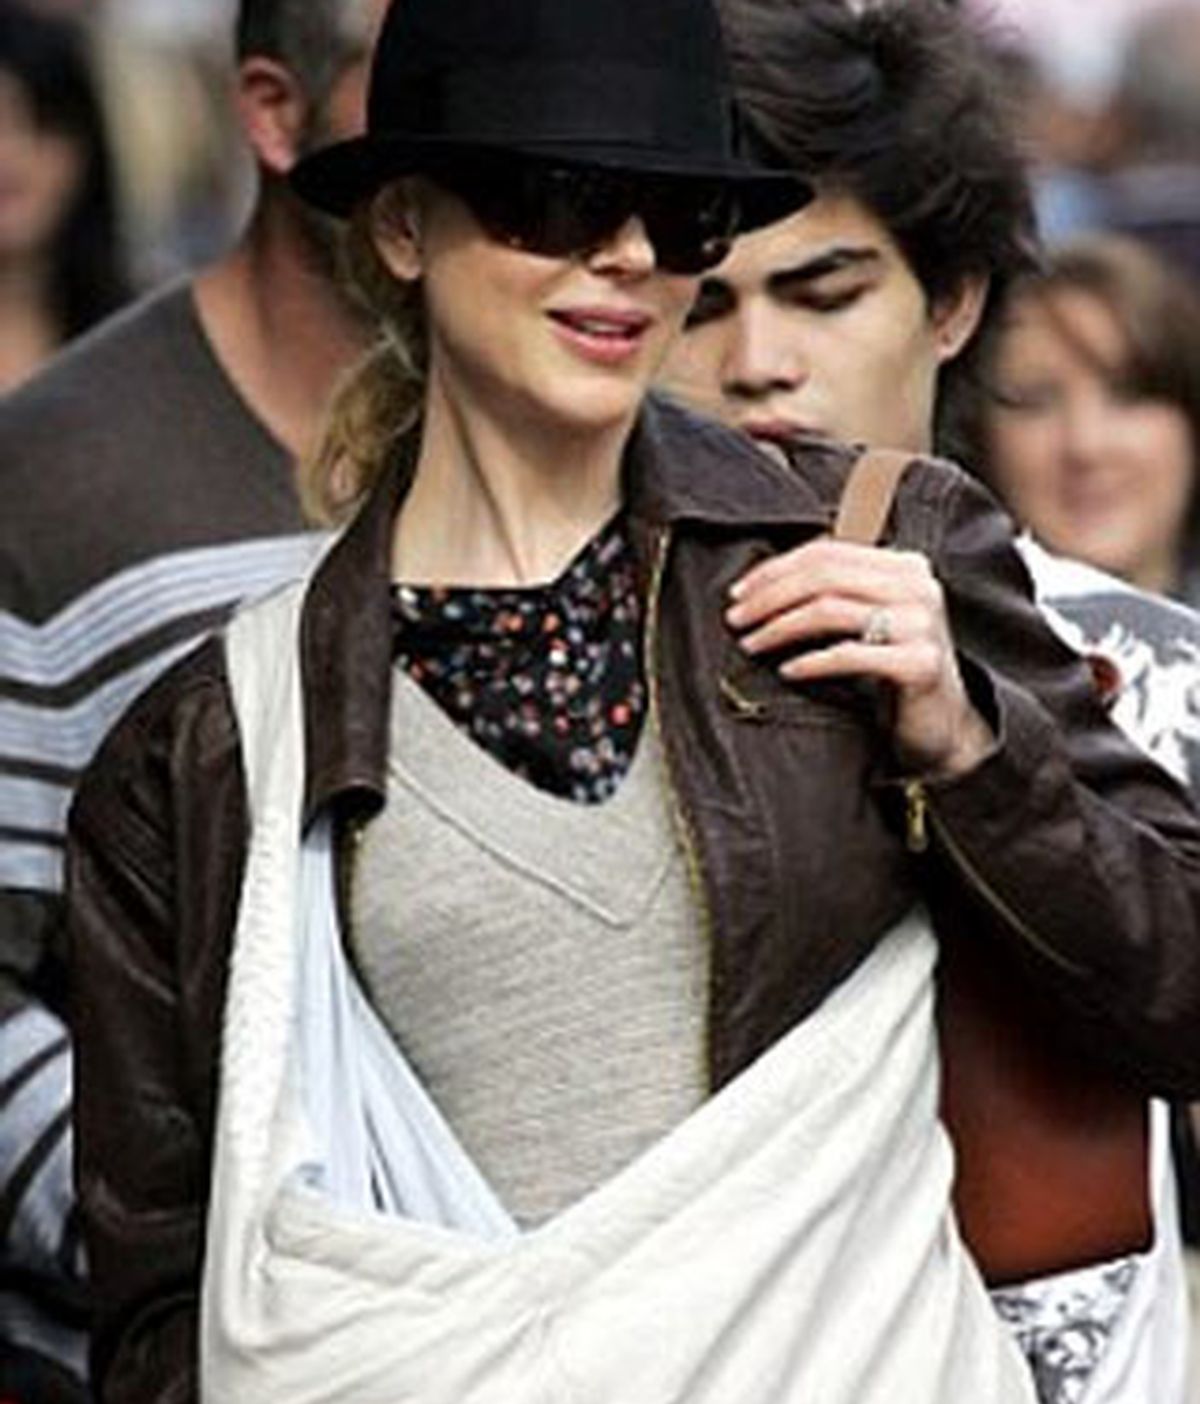 Imagen de Nicole Kidman llevando a su hija en una bandolera portabebés. Foto: "The Daily Mail"